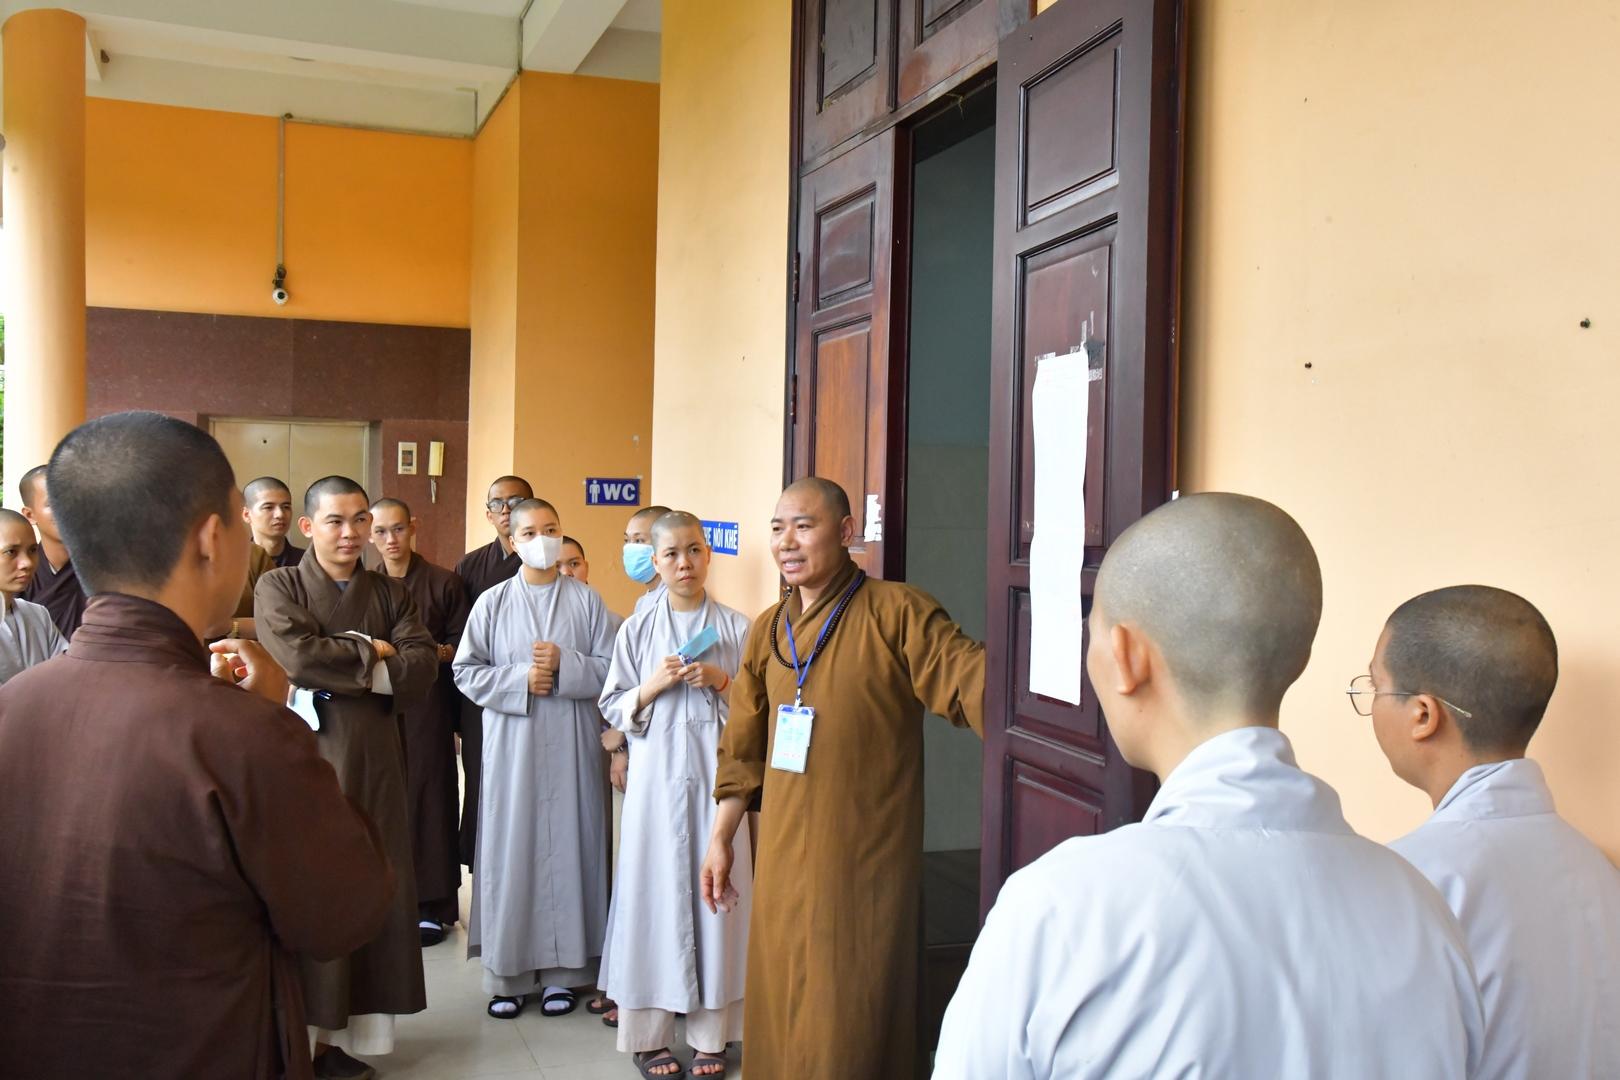 Hình ảnh buổi thi chiều Kỳ thi tuyển sinh tại Học viện Phật giáo Việt Nam TP.HCM